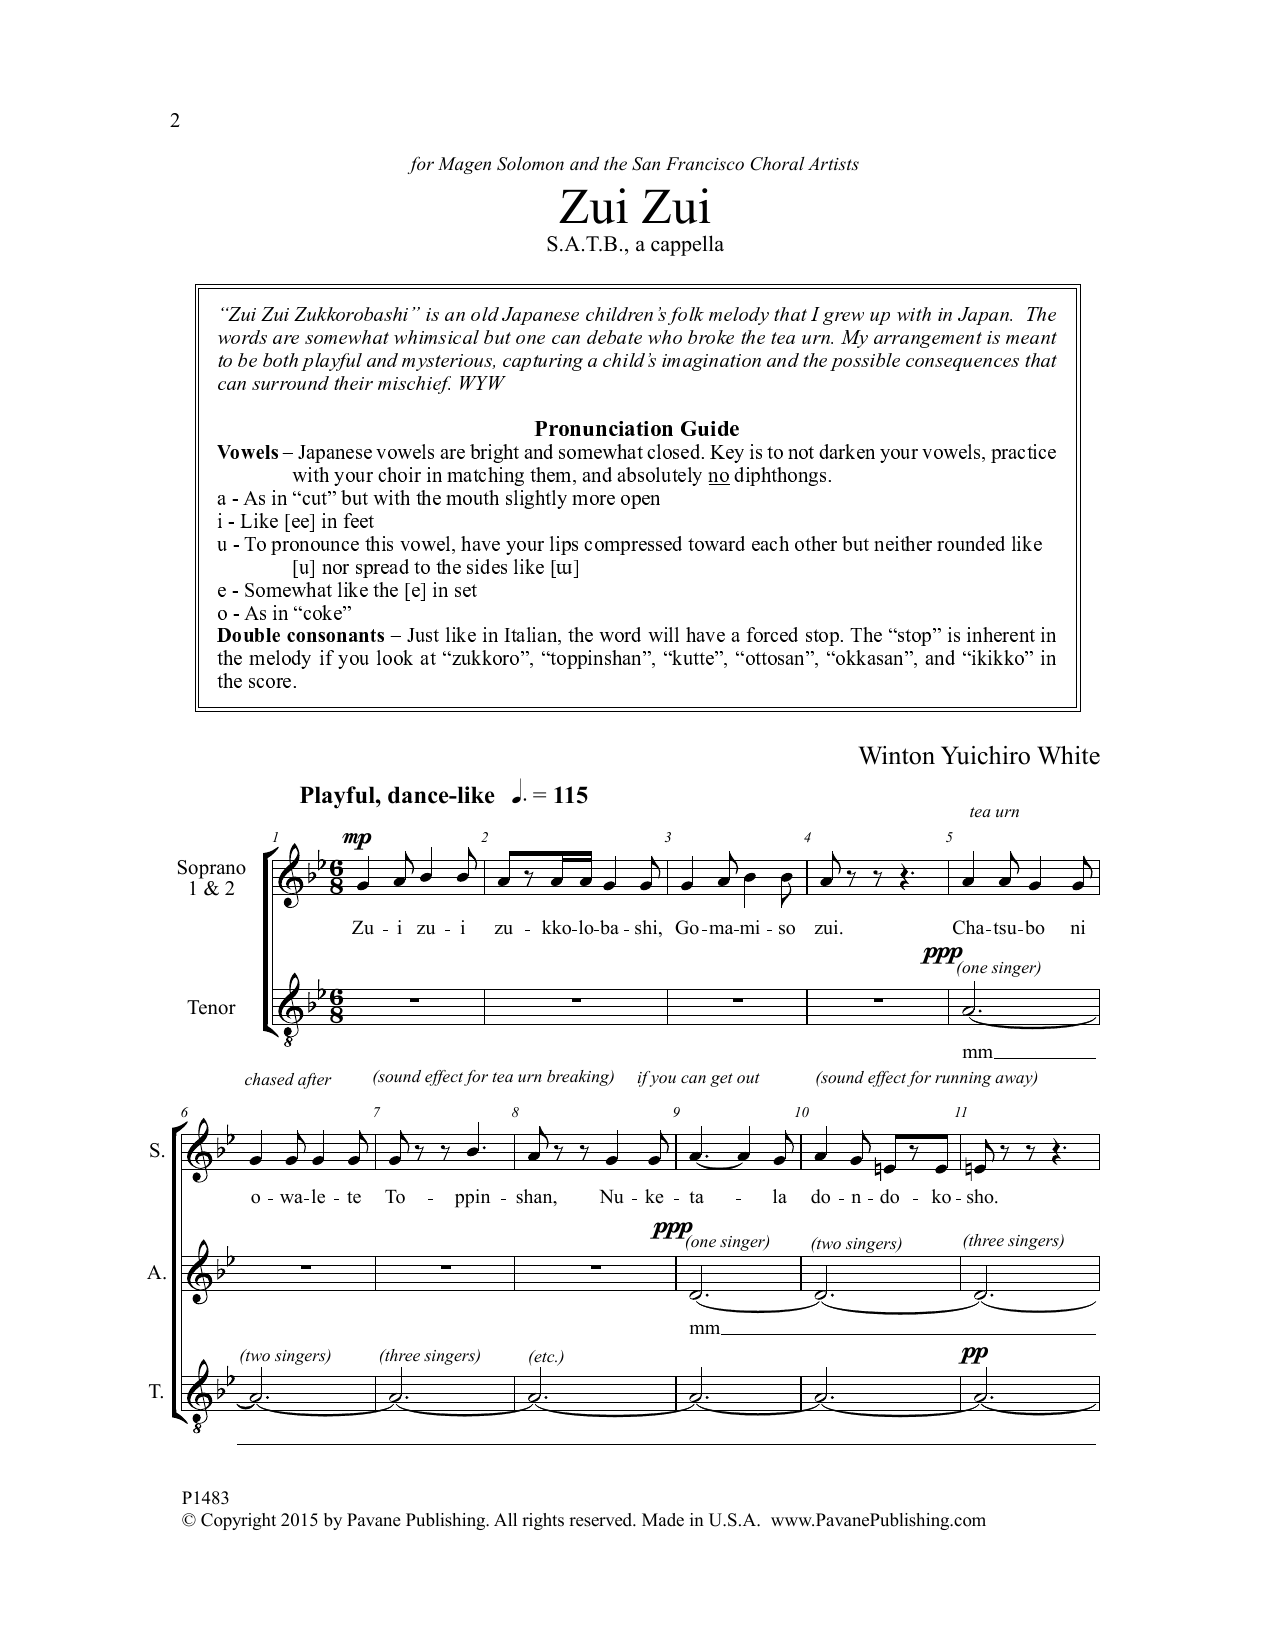 Download Winton Yuichiro White Zui Zui Sheet Music